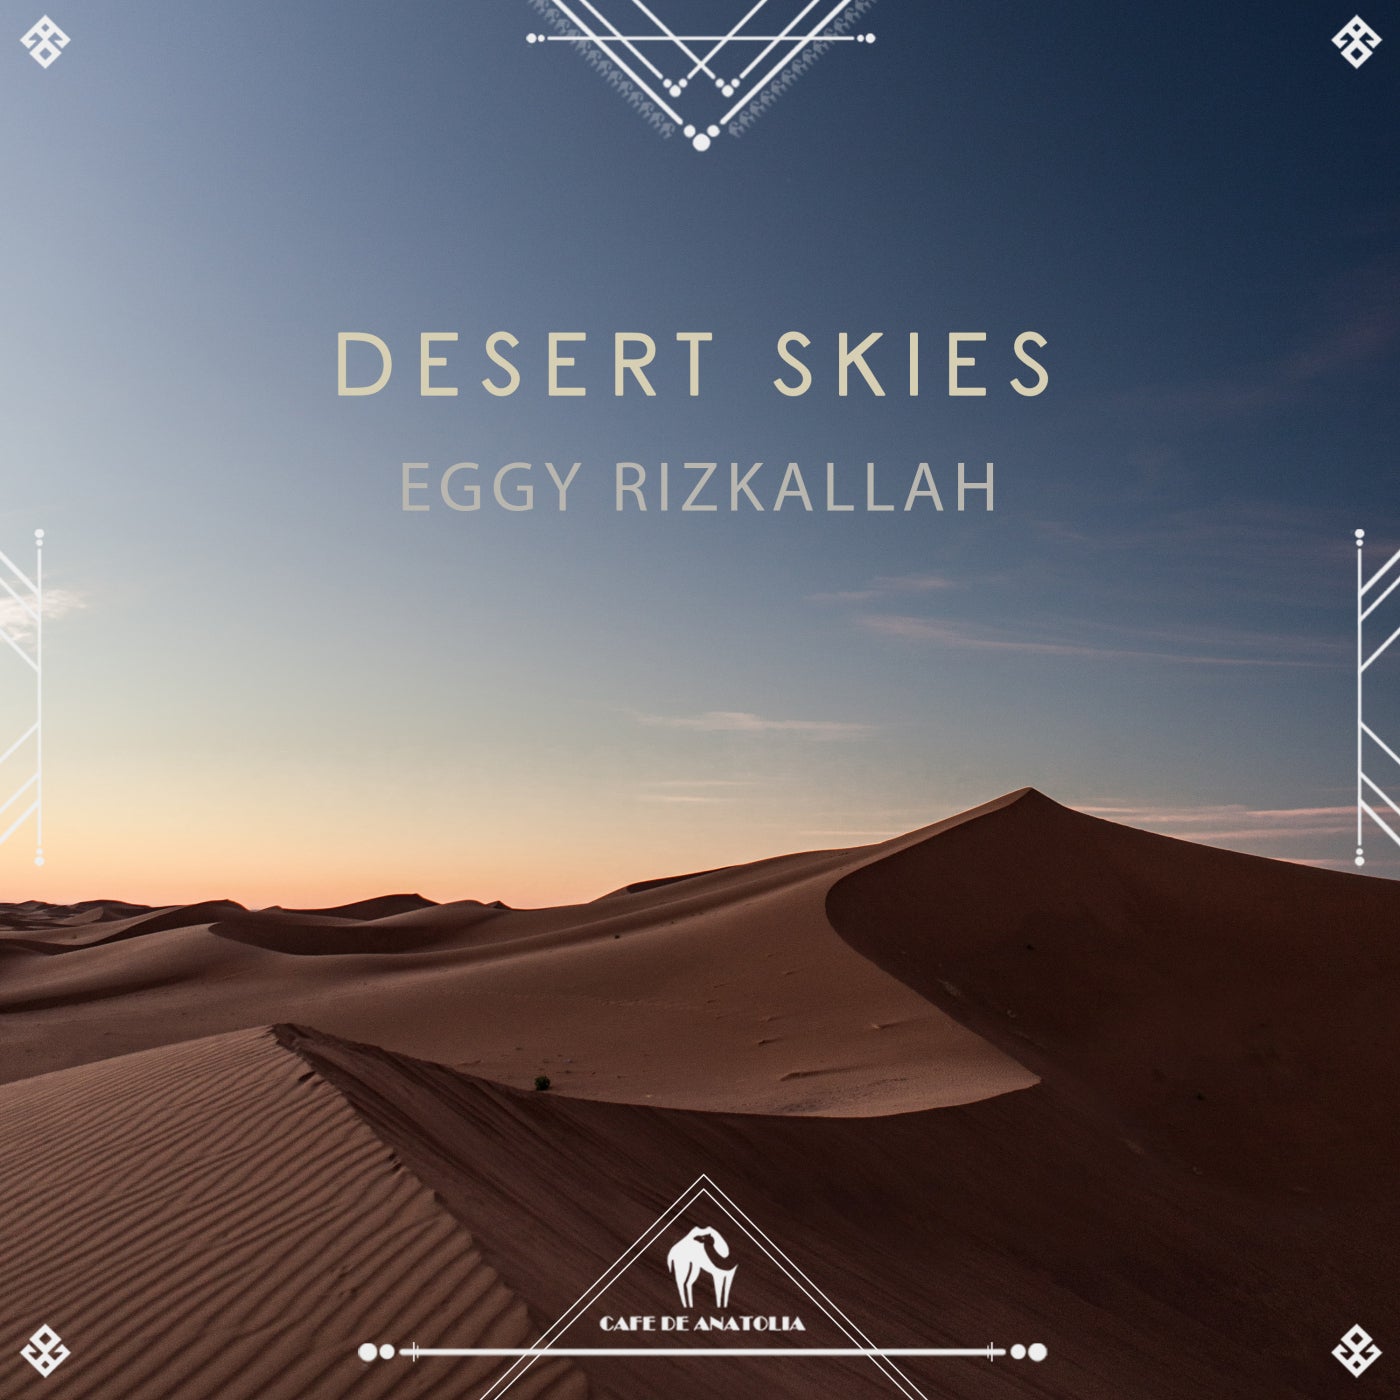 Cafe De Anatolia, Eggy Rizkallah - Desert Skies [CDA088]